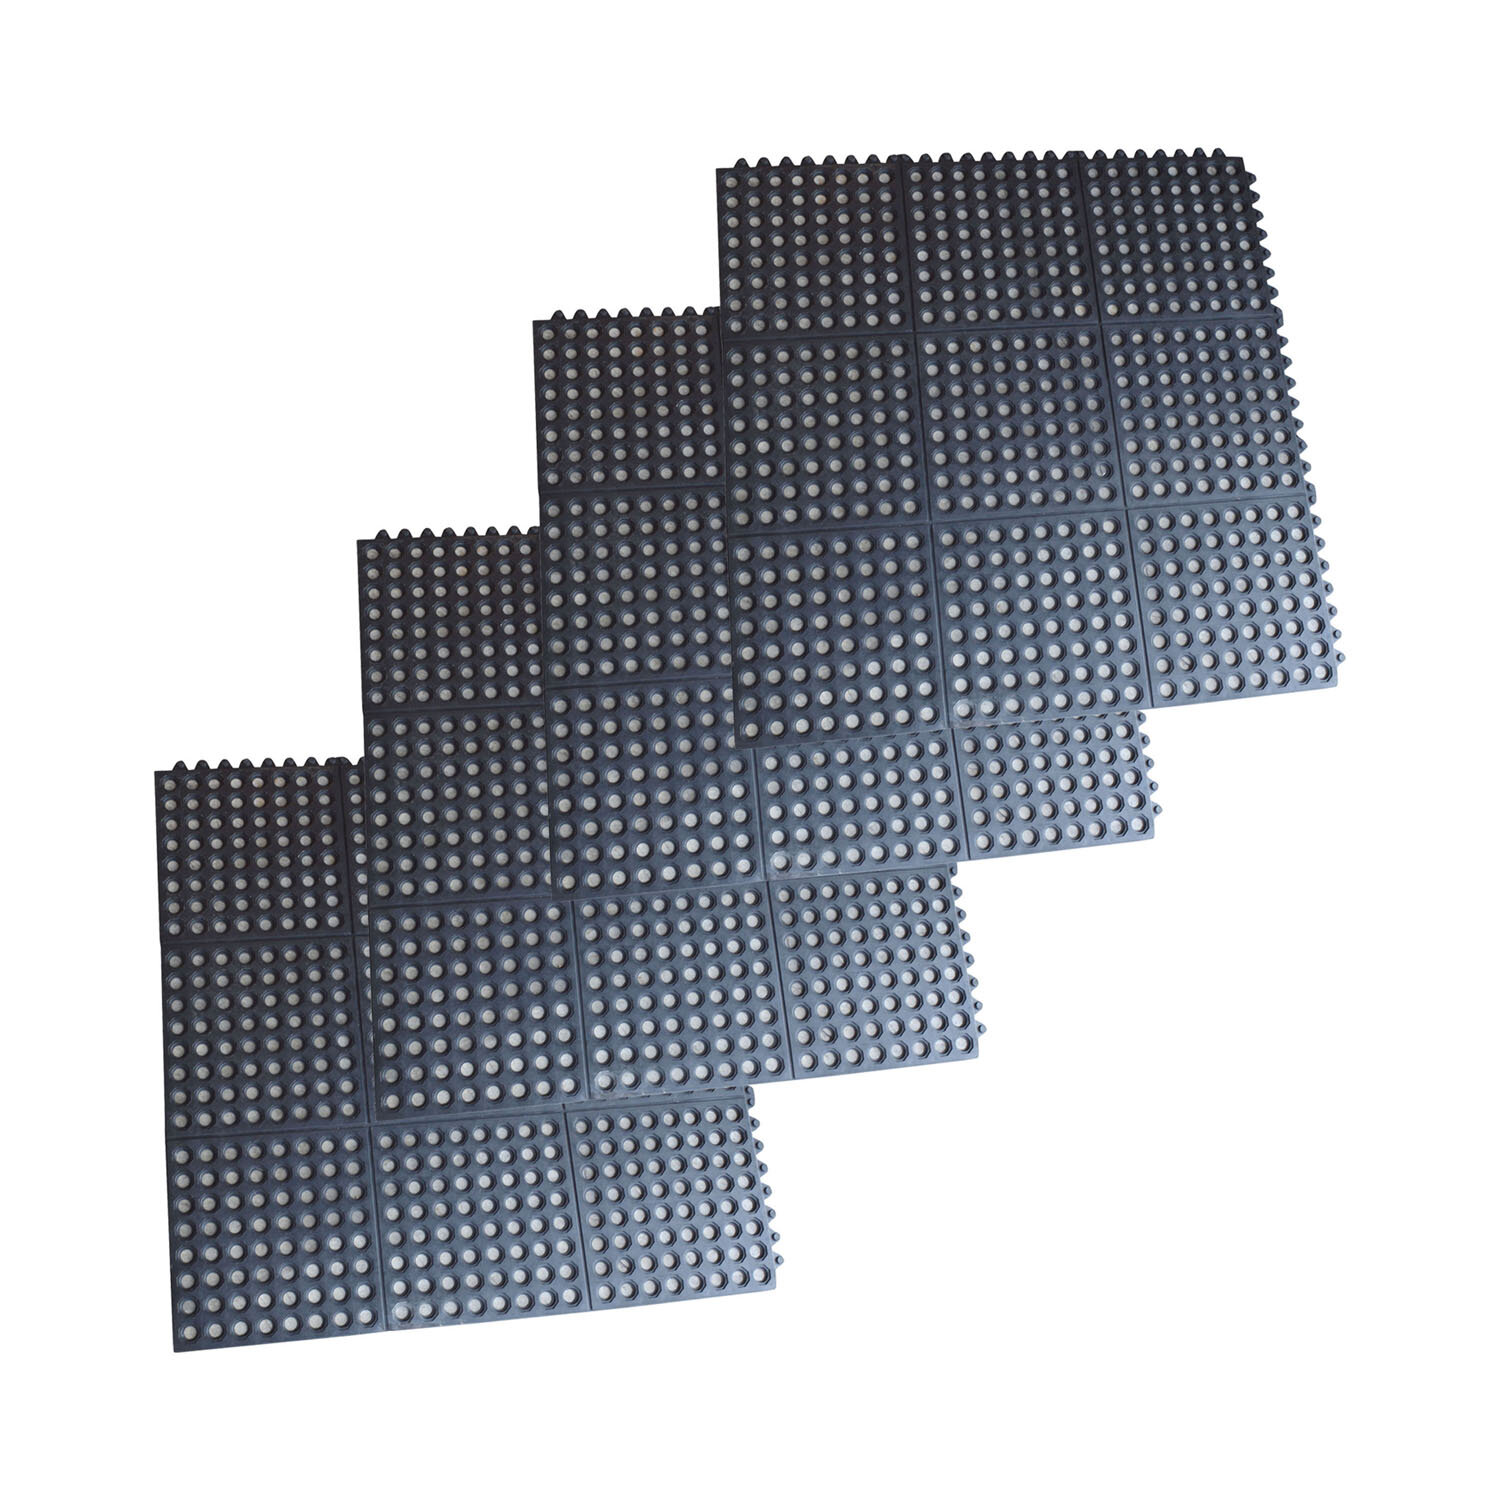 Offex Industrial 36 X 36 In Garage Flooring Tiles In Black Wayfair